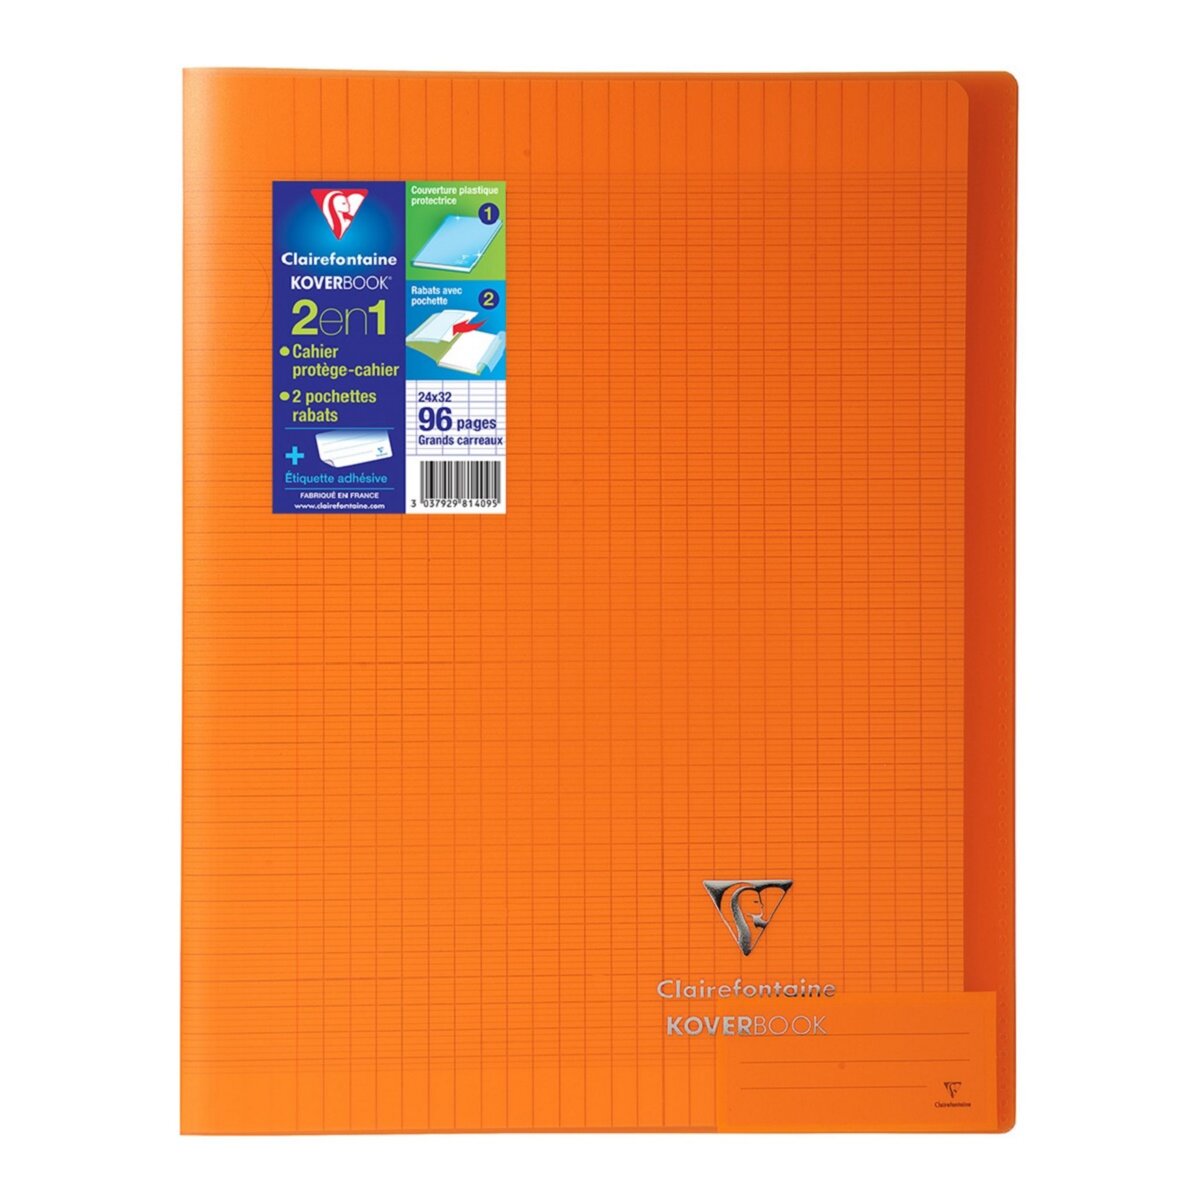 CLAIREFONTAINE Cahier piqué Koverbook 24x32cm 96 pages grands carreaux Seyes orange transparent